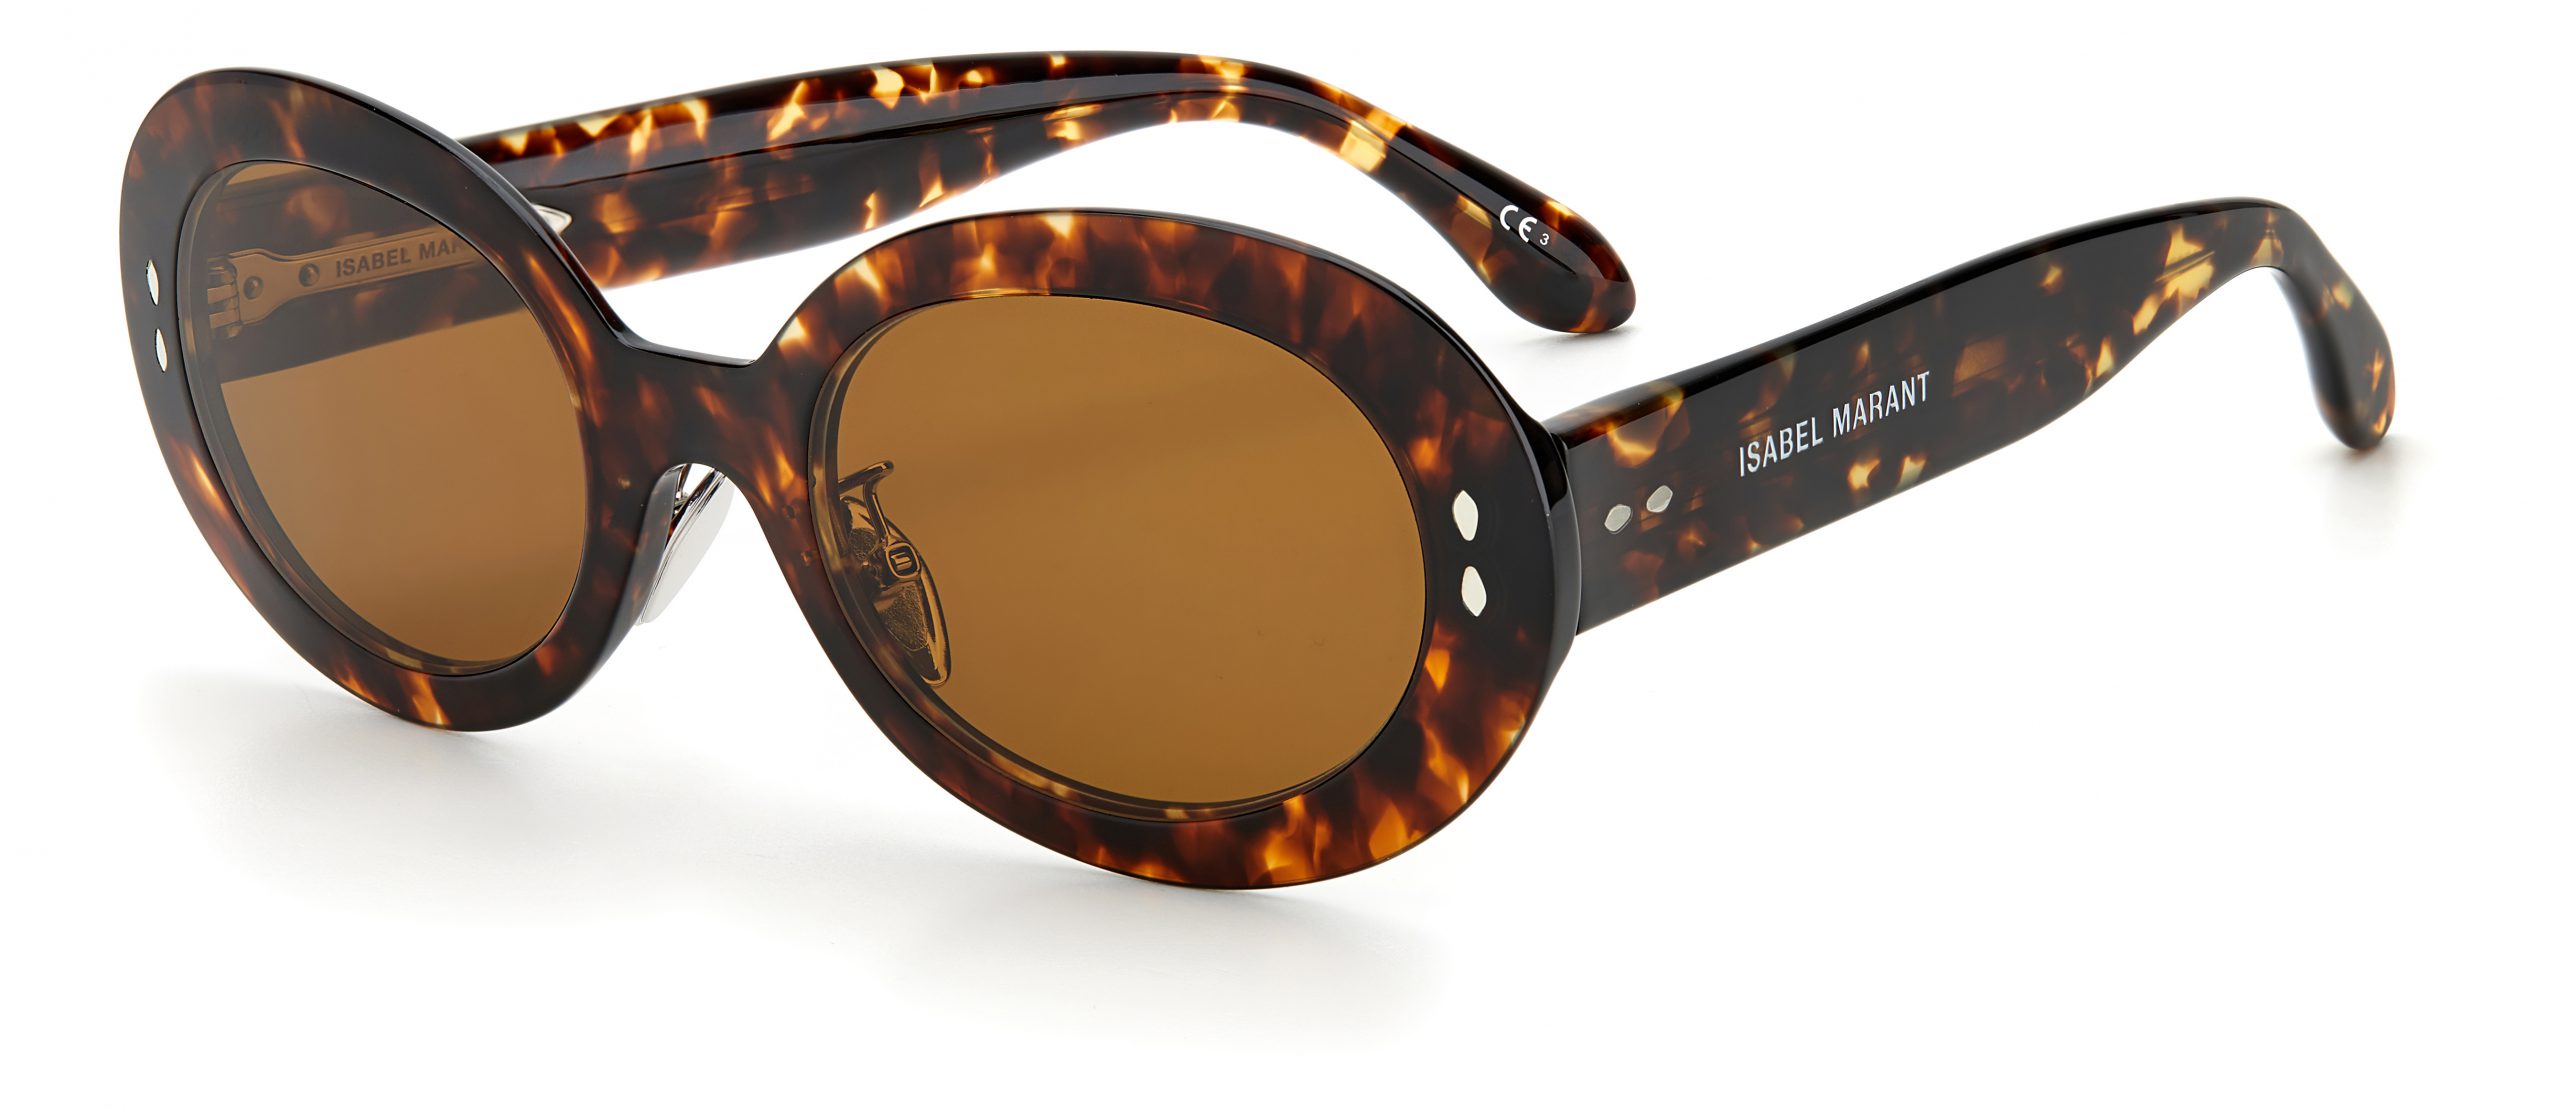 IM 0003/S 3 ISABEL MARANT Sunglasses | George & Matilda Eyecare and Optometrist